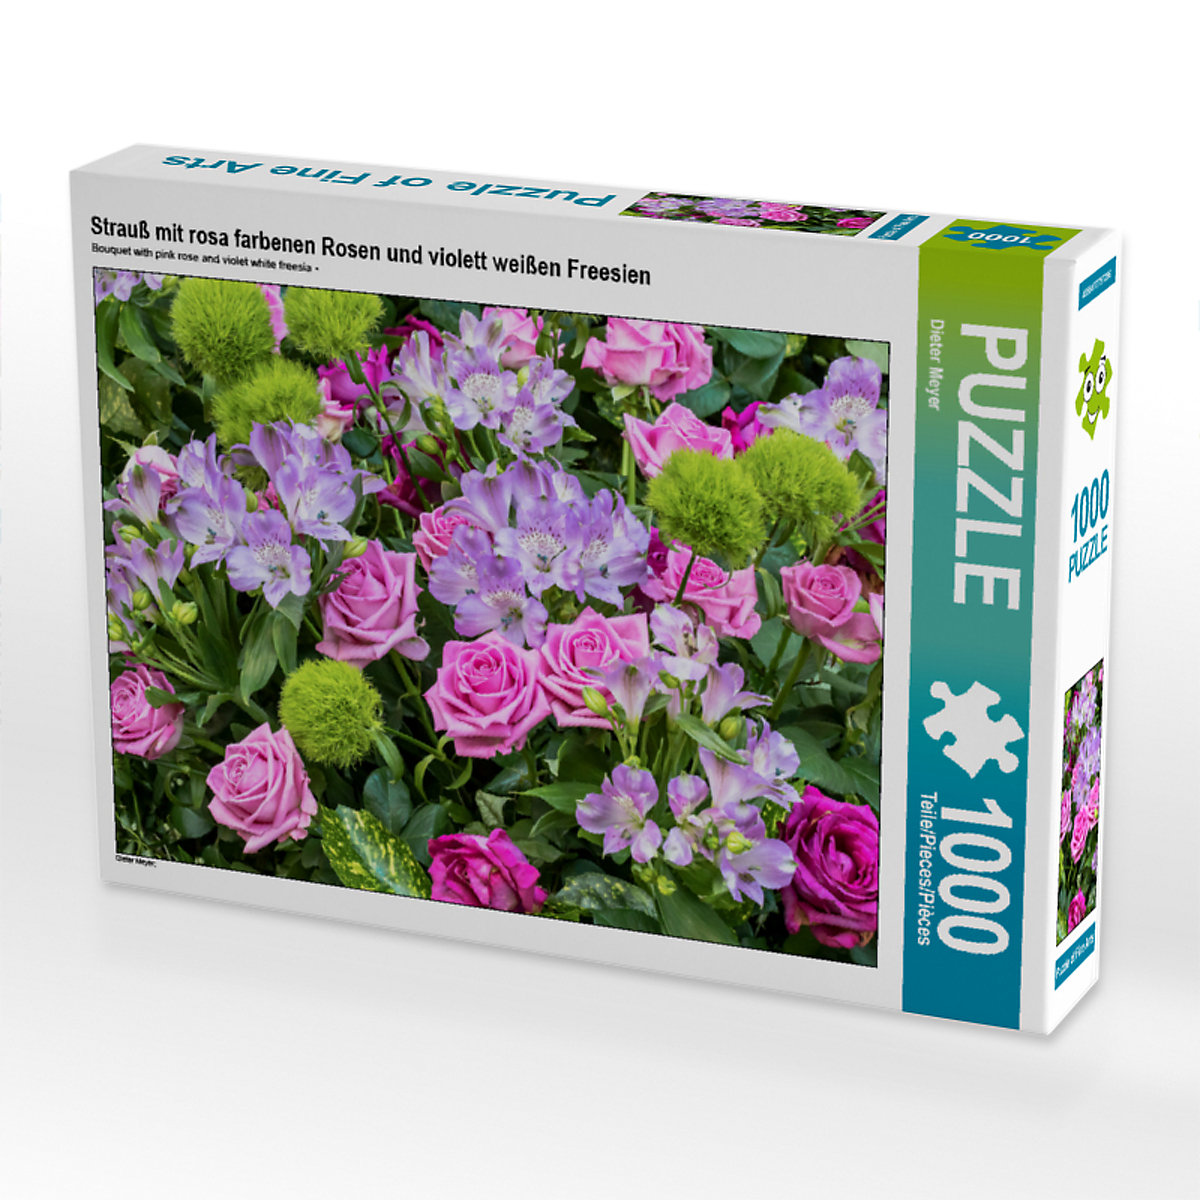 CALVENDO® Puzzle CALVENDO Puzzle Strauß mit rosa farbenen Rosen und violett weißen Freesien 1000 Teile Foto-Puzzle für glückliche Stunden